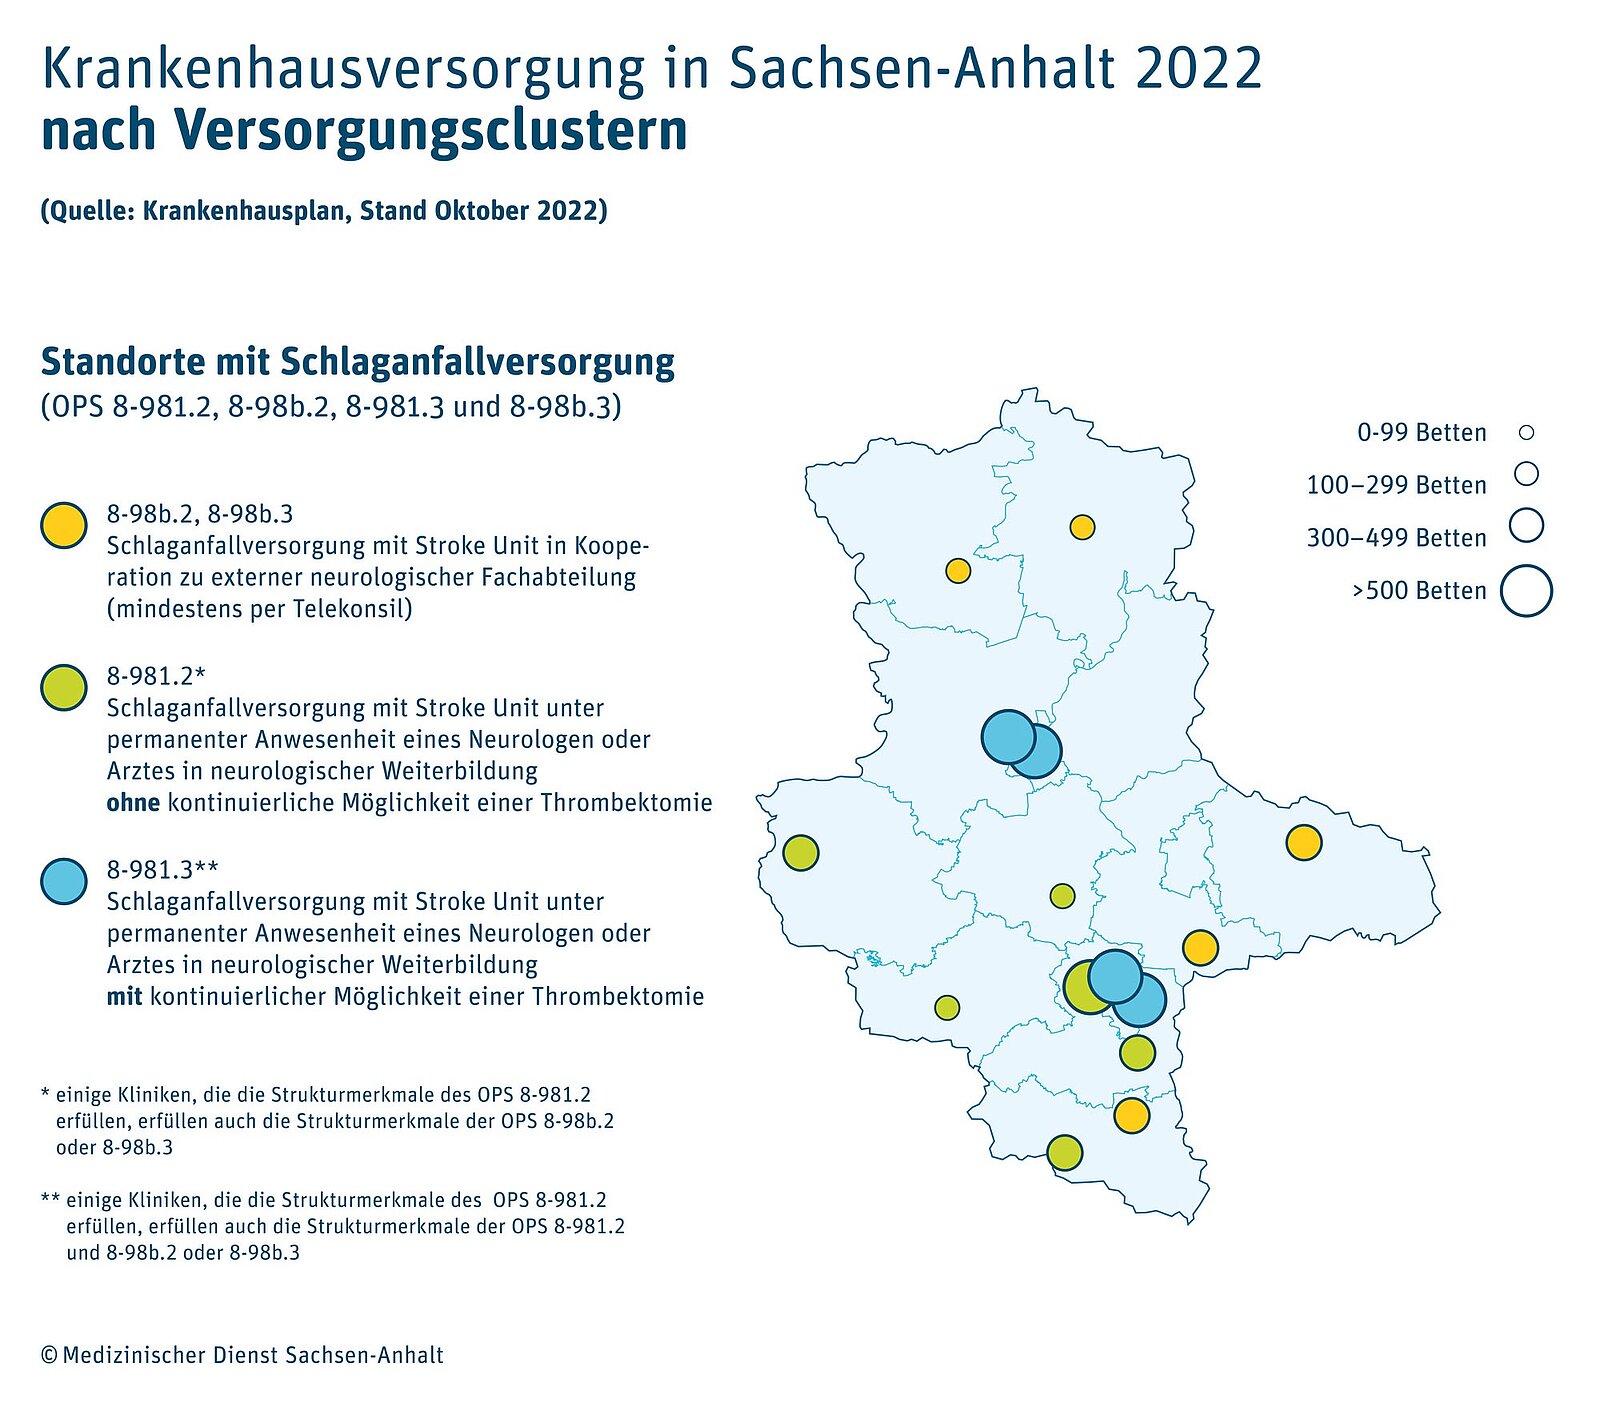 Krankenhausversorgung in Sachsen-Anhalt 2022 nach Versorgungsclustern (Quelle: Krankenhausplan mit Stand Oktober 2022): Standorte mit Schlaganfallversorgung (OPS 8-981.2, 8-98b.2, 8-981.3 und 8-98b.3)